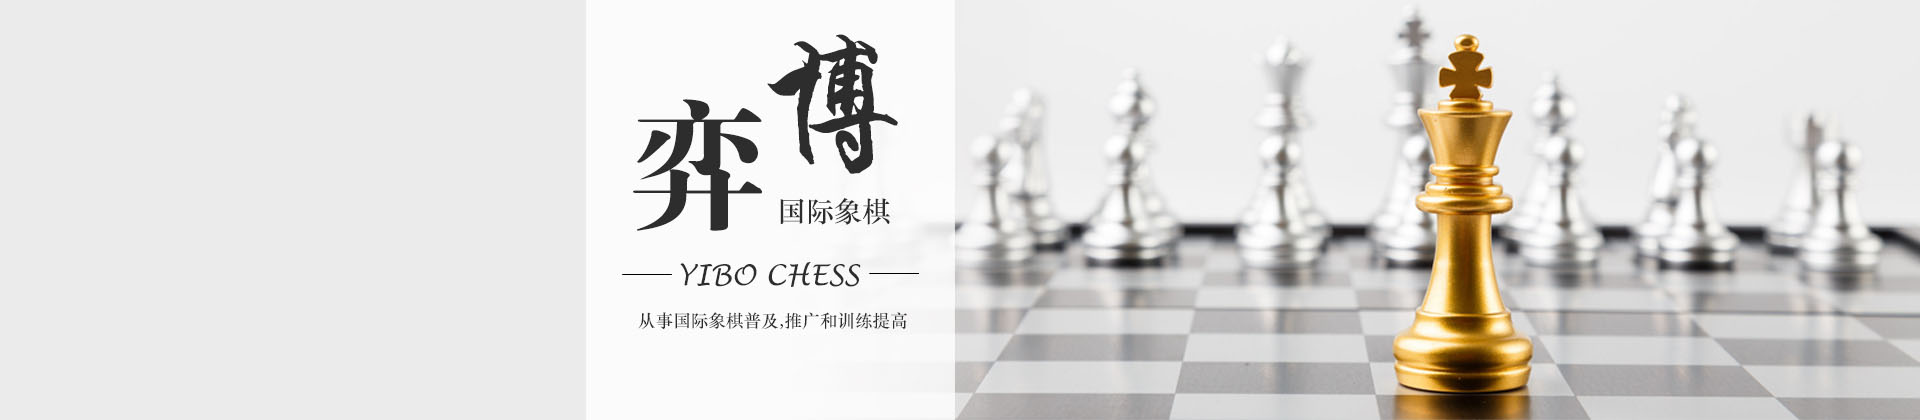 广州弈博国际象棋